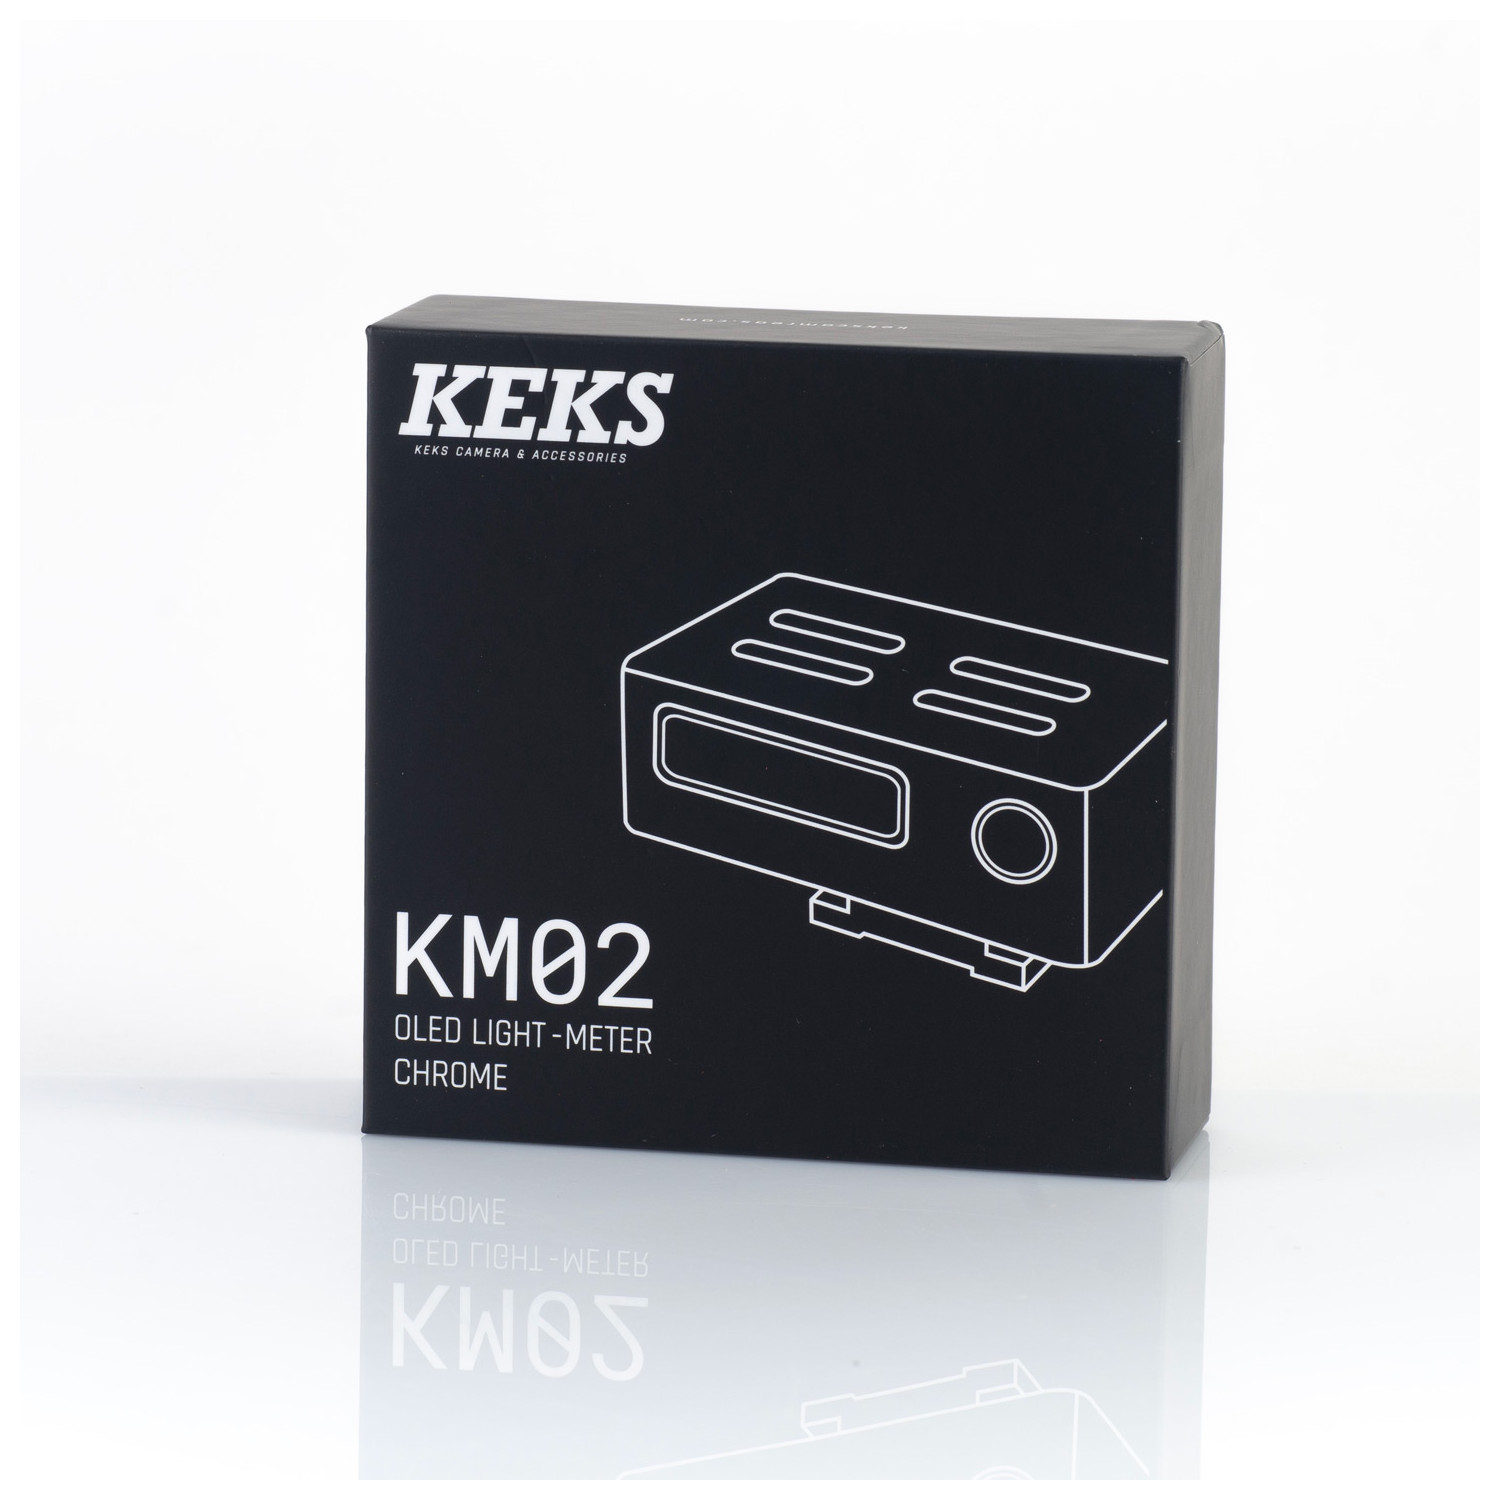 KEKS KM02 Posemètre silver